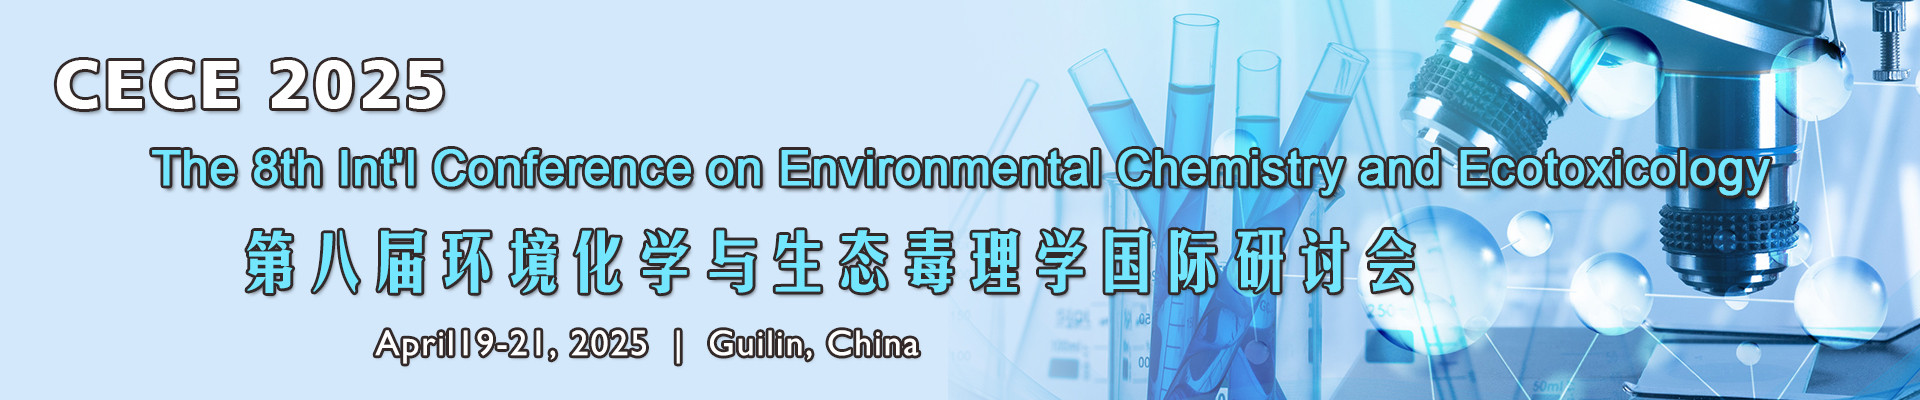 第八届环境化学与生态毒理学国际研讨会(CECE 2025)